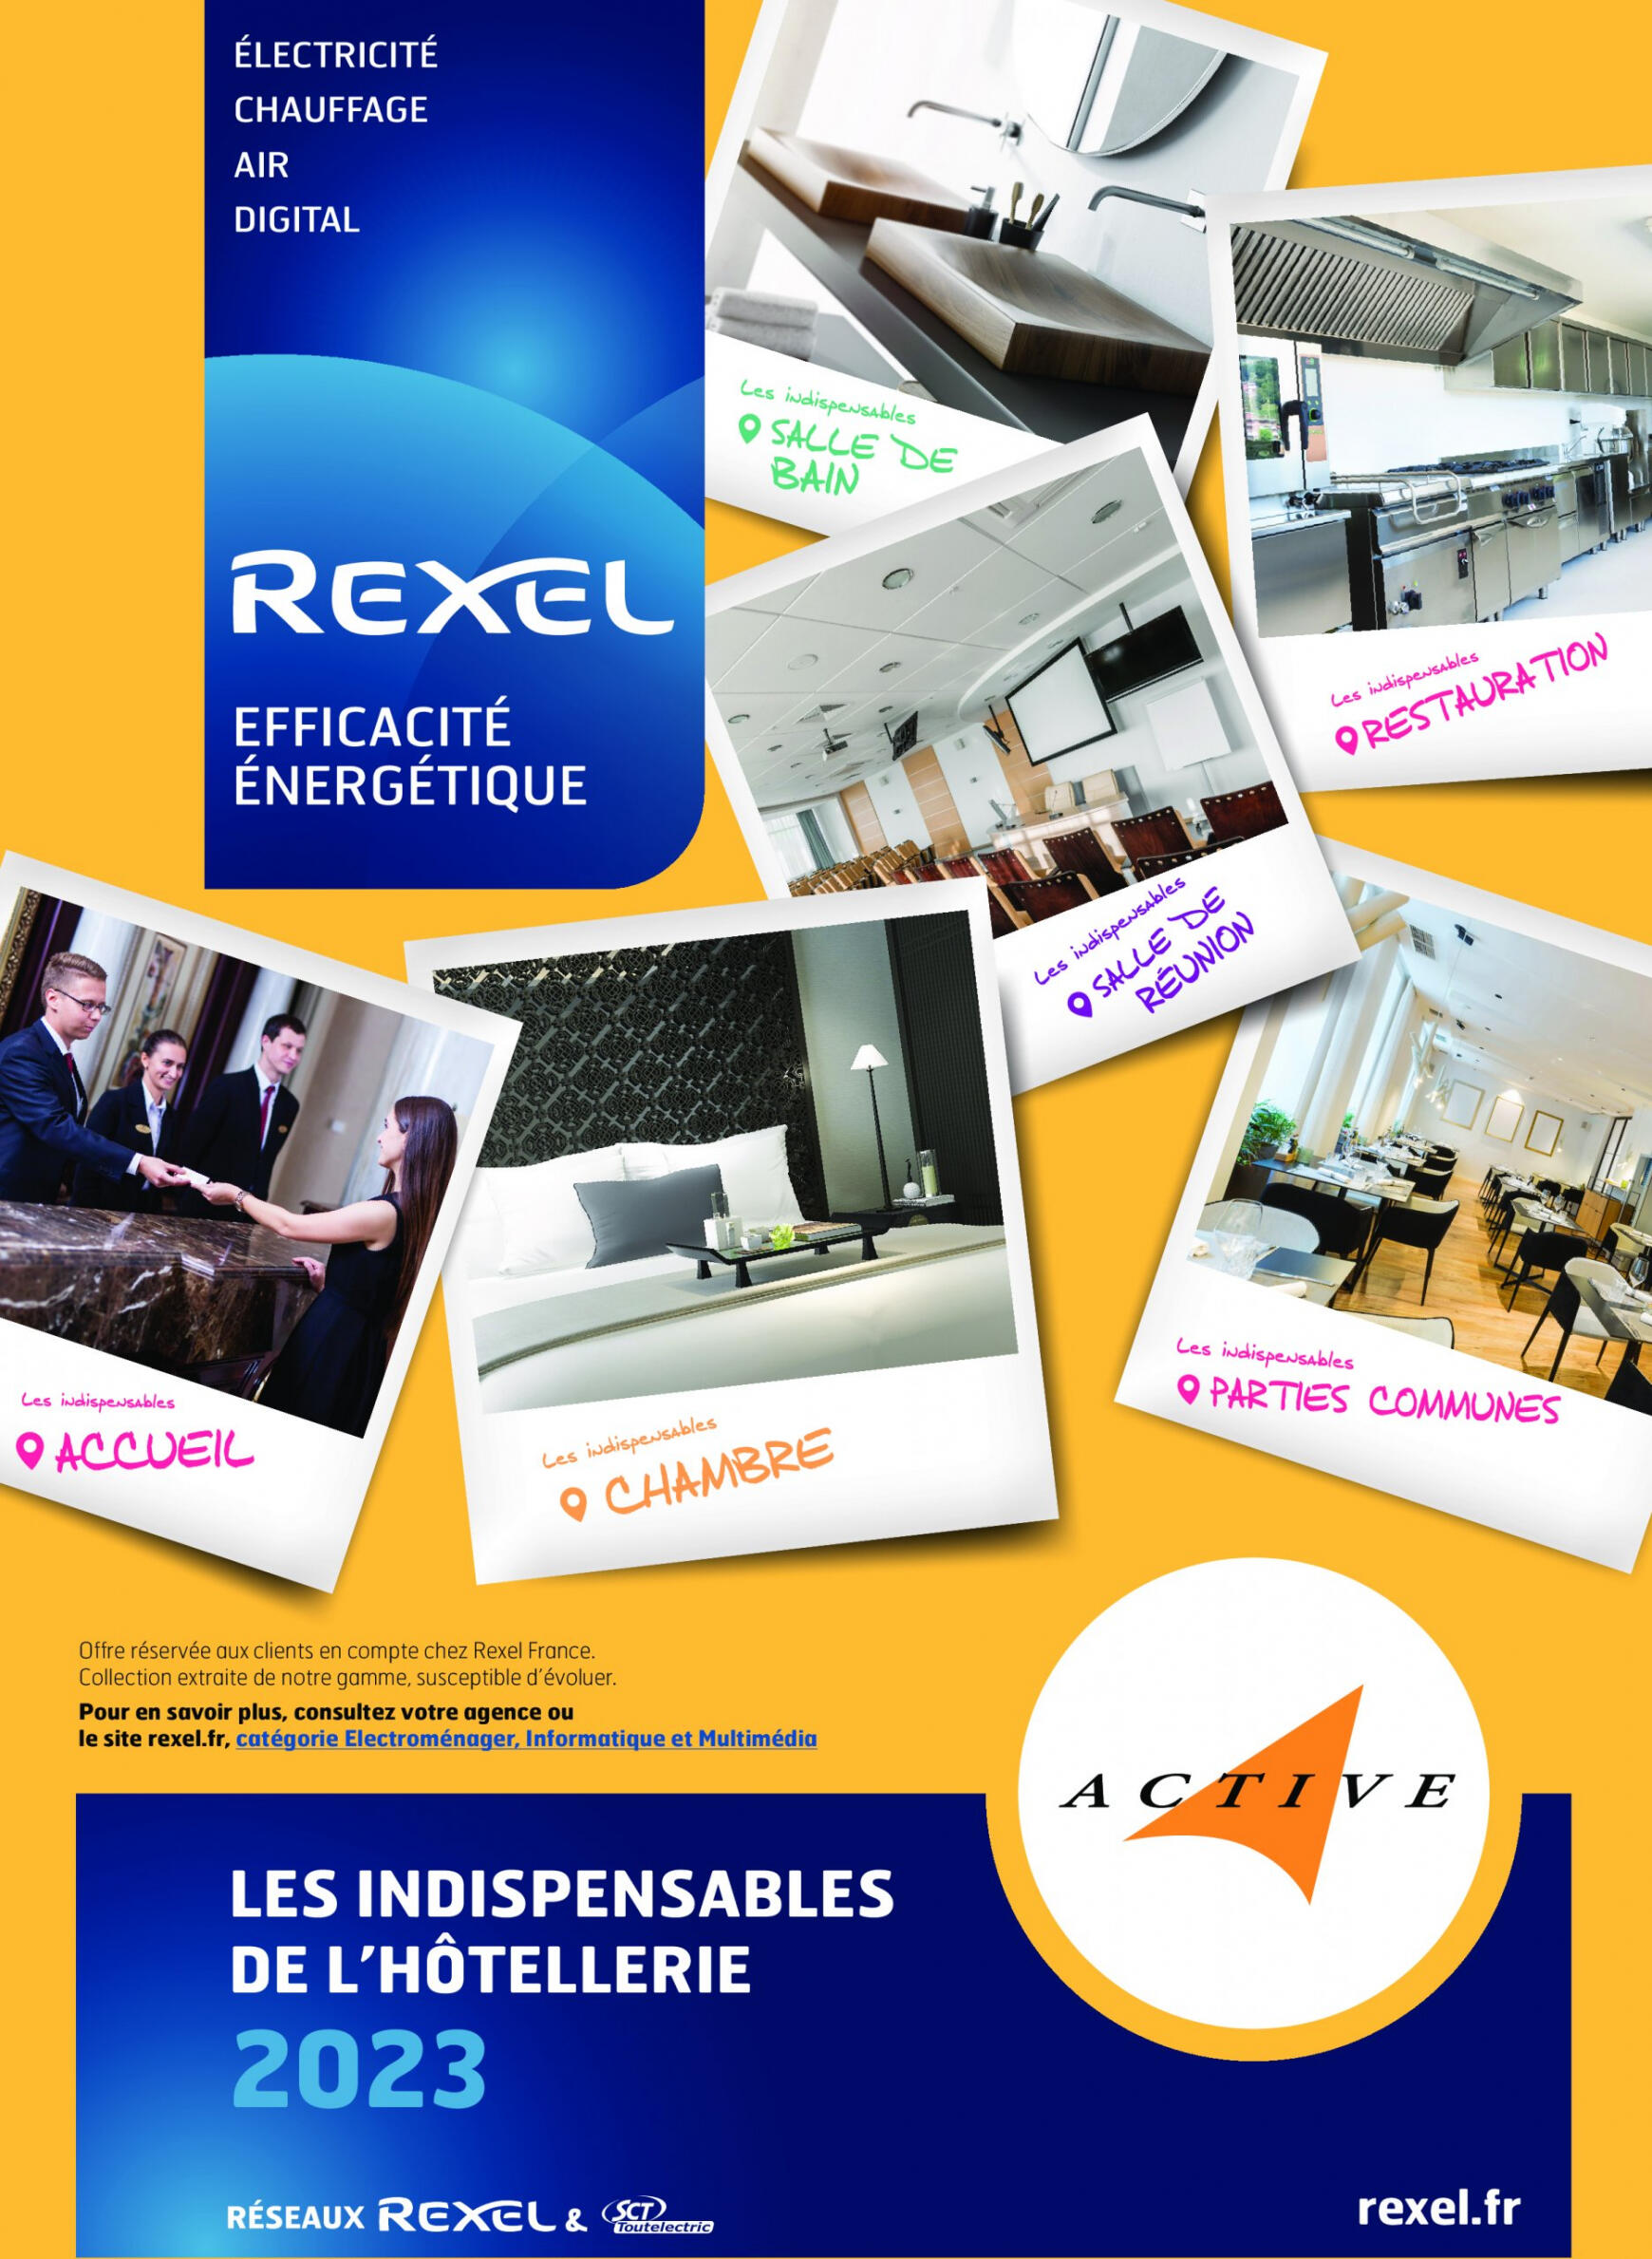 rexel - Rexel - Les indispensables de l'hôtellerie